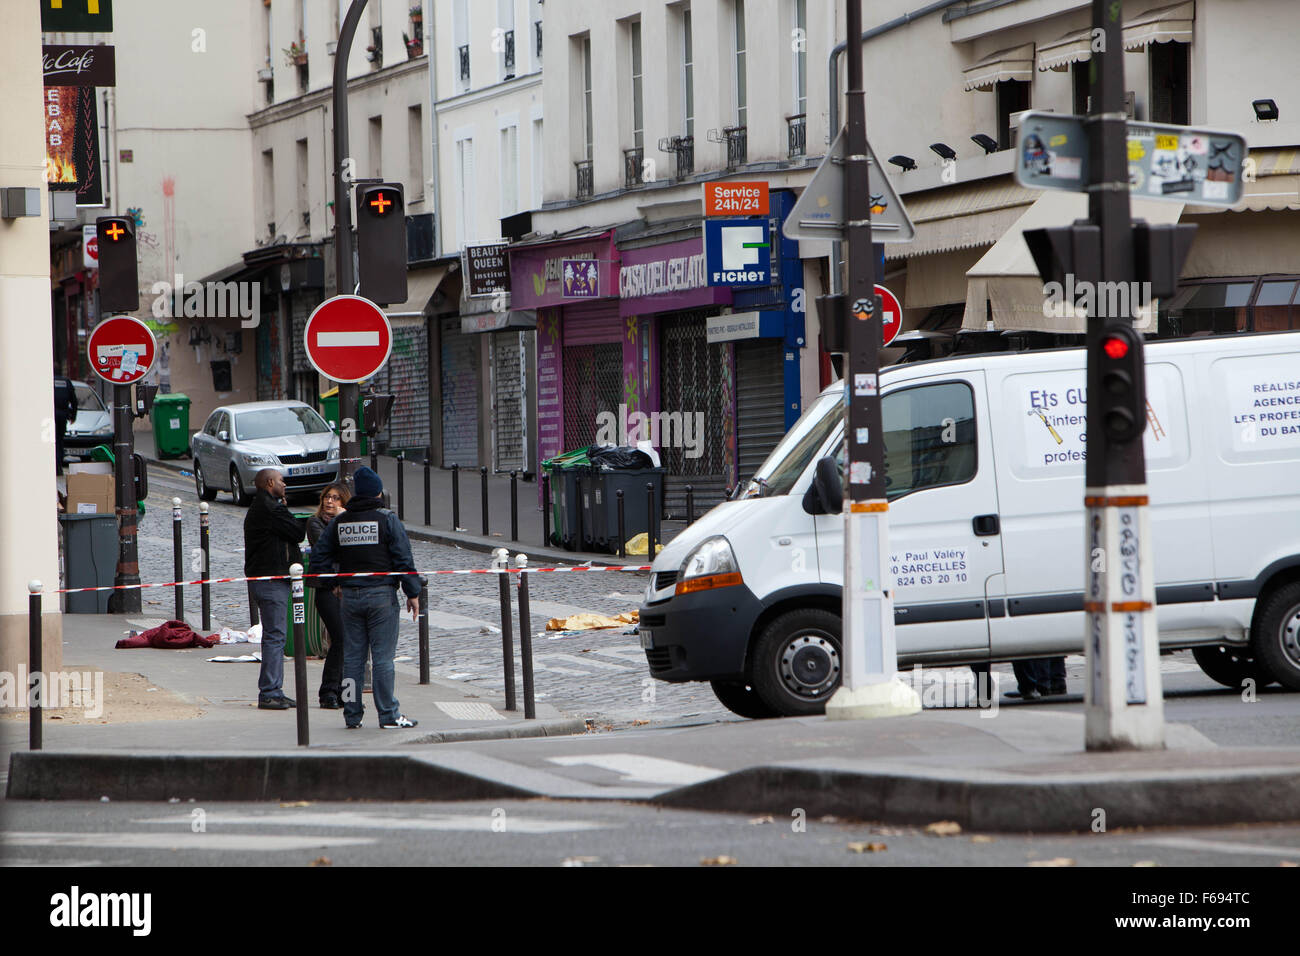 Parigi attacchi terroristici, 13 novembre 2015, Venerdì, rivendicato da ISIS, 128 persone uccise, 300 ferite. Sette singoli attentati hanno avuto luogo, comprendente sei kalashnikov tiri sulle varie caffetterie e ristoranti e tre esplosioni. Posizioni sulla mattina di sabato, cinque persone sono state uccise durante un'esplosione su una strada chiamata Rue de la Fontaine au Roi e la Rue du Faubourg du Temple, polizia francese nella parte anteriore organismi coperti da lenzuola bianche, Foto Stock